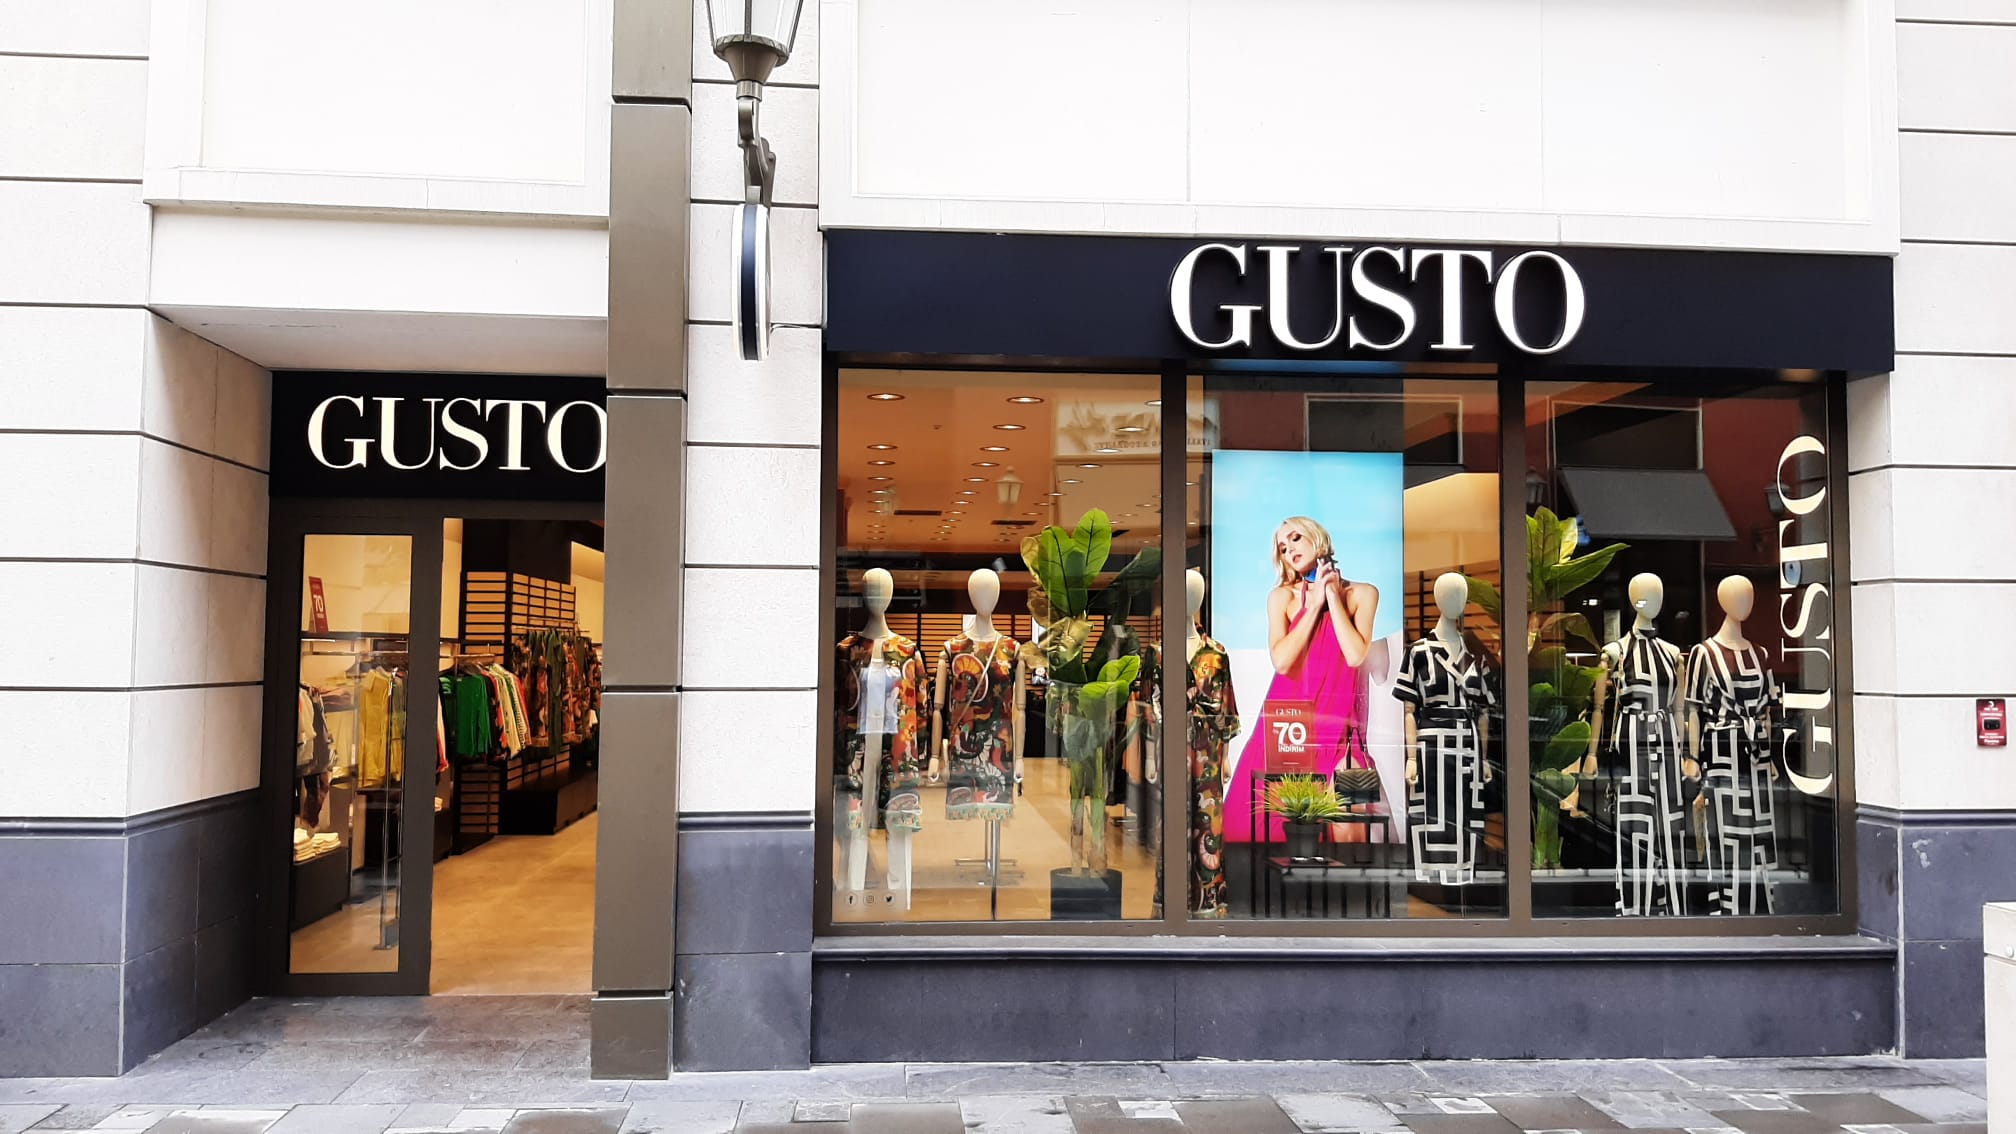 Gusto is opened at Piyalepaşa Çarşı Strip Mall.